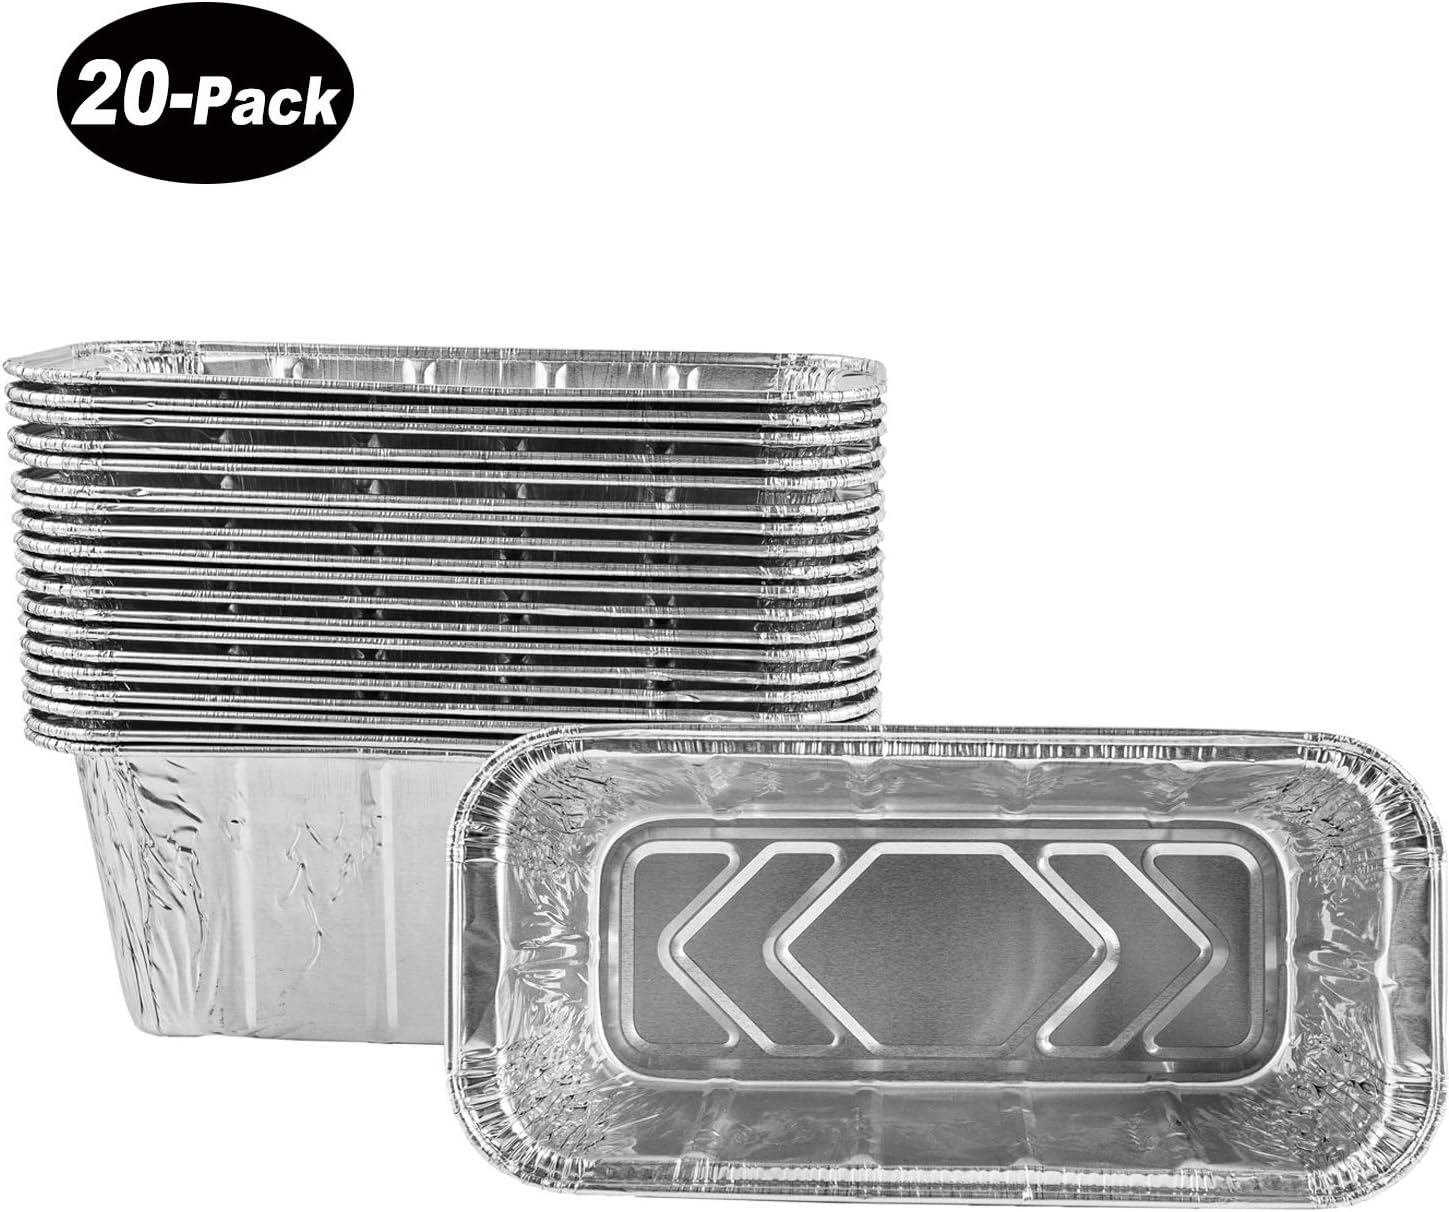 Disposable Aluminum Foil Pans with Lids Pack of 30